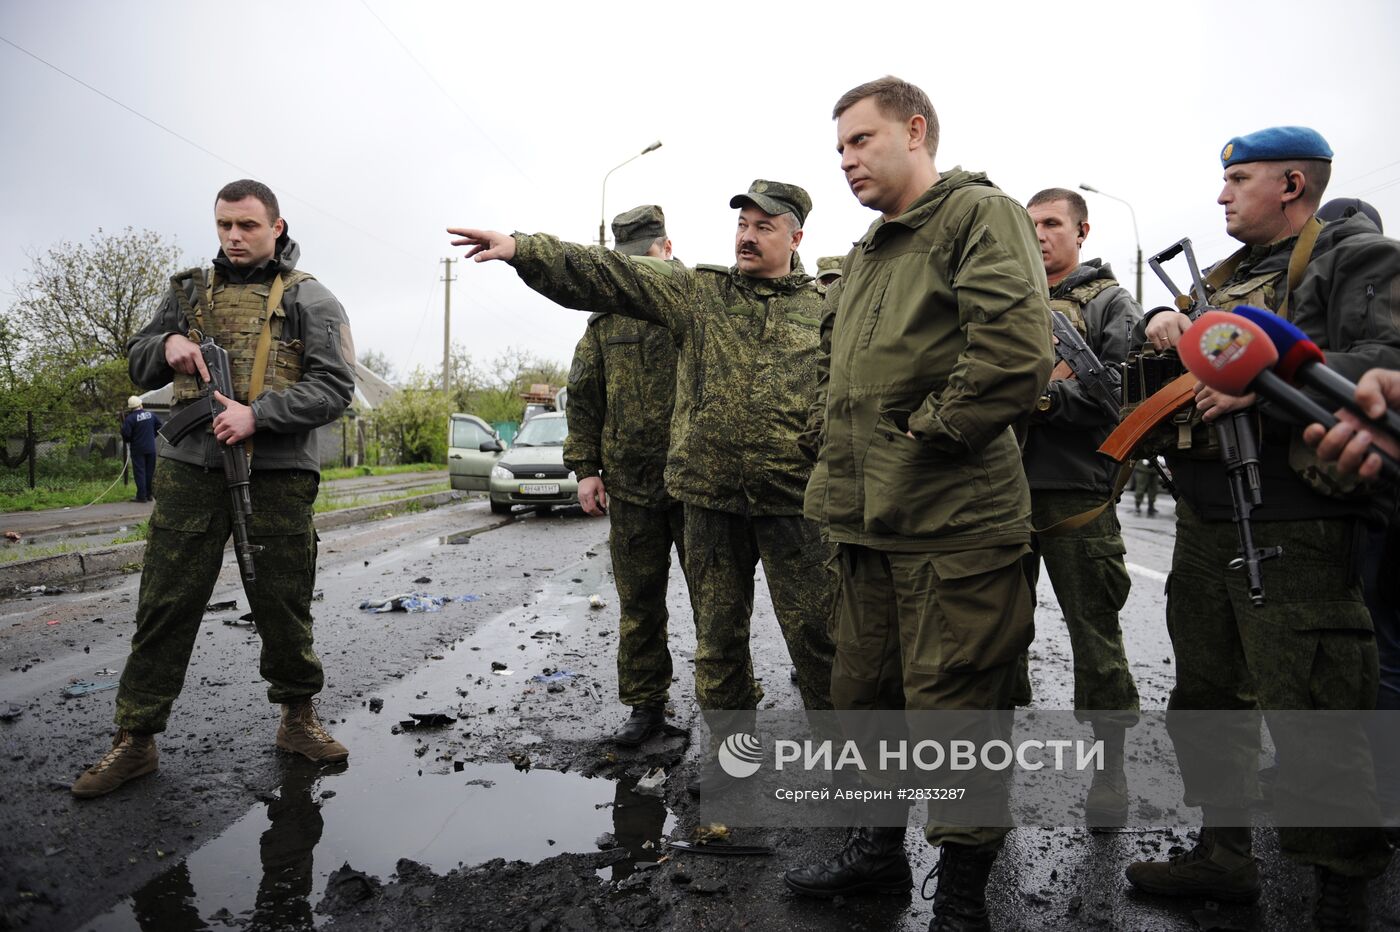 Обстрел КПП "Еленовка" в Донецкой области украинскими силовиками